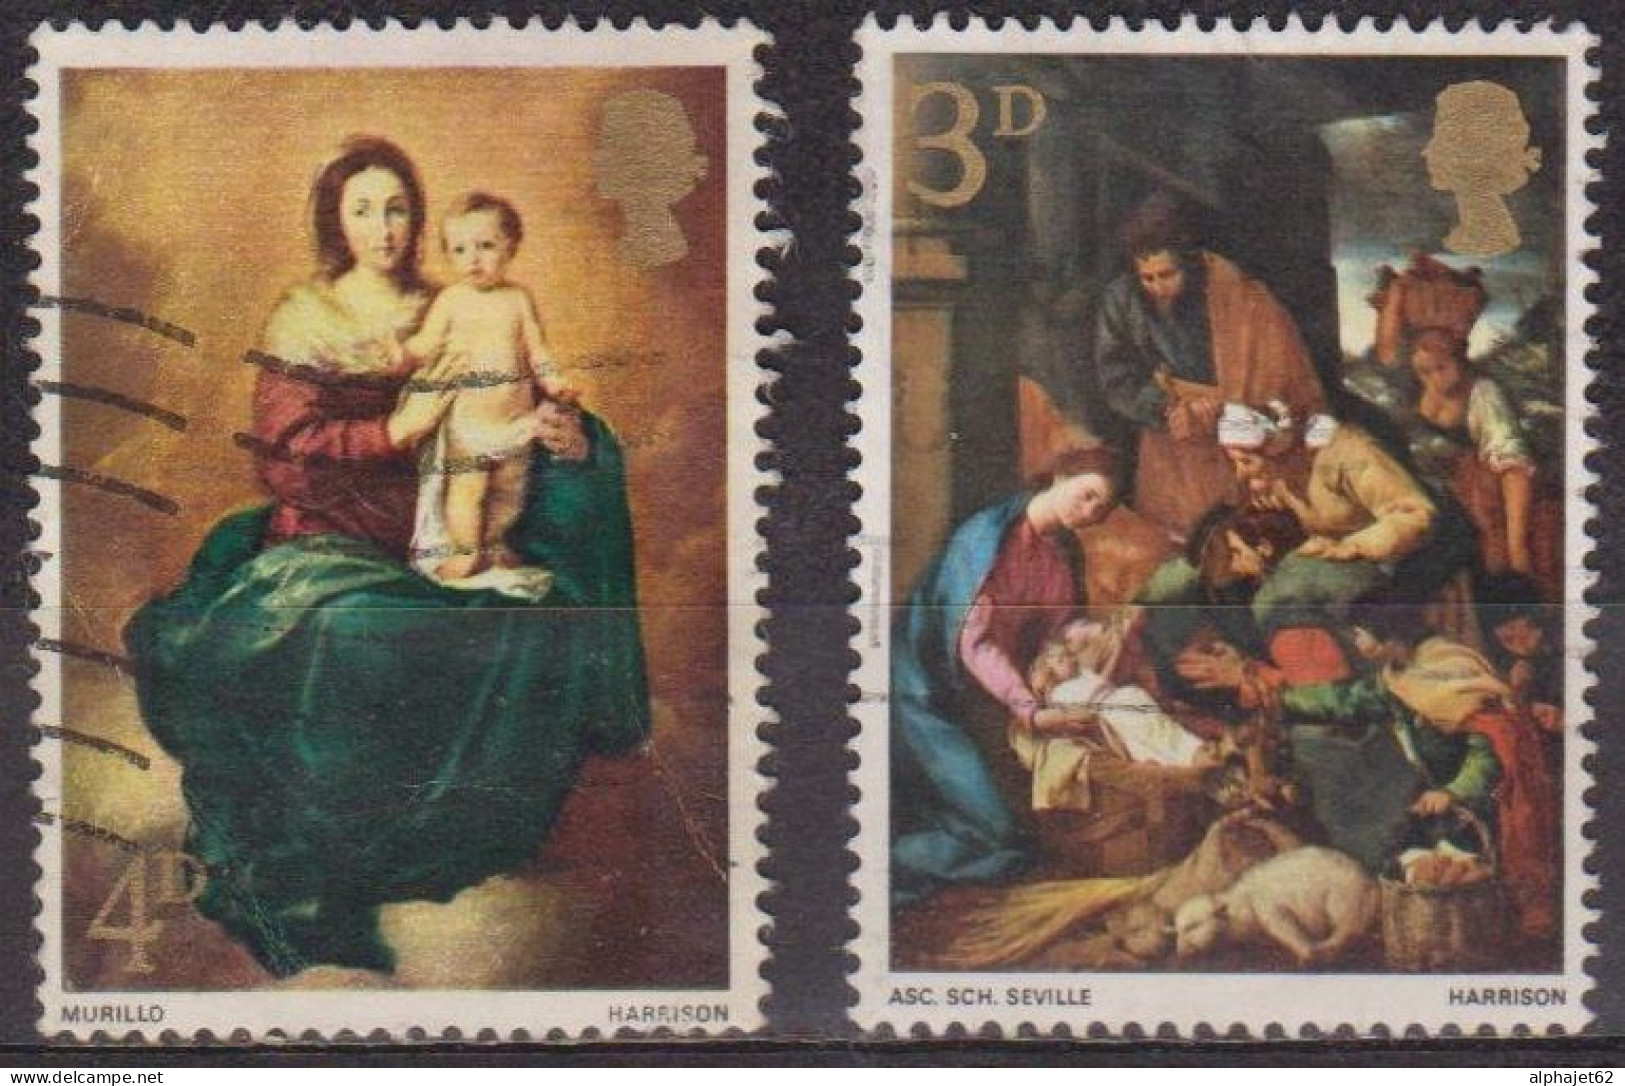 Noel - GRANDE BRETAGNE - Adoration Des Bergers - Vierge Et L'enfant Par Murillo - N° 499-500 - 1967 - Usados